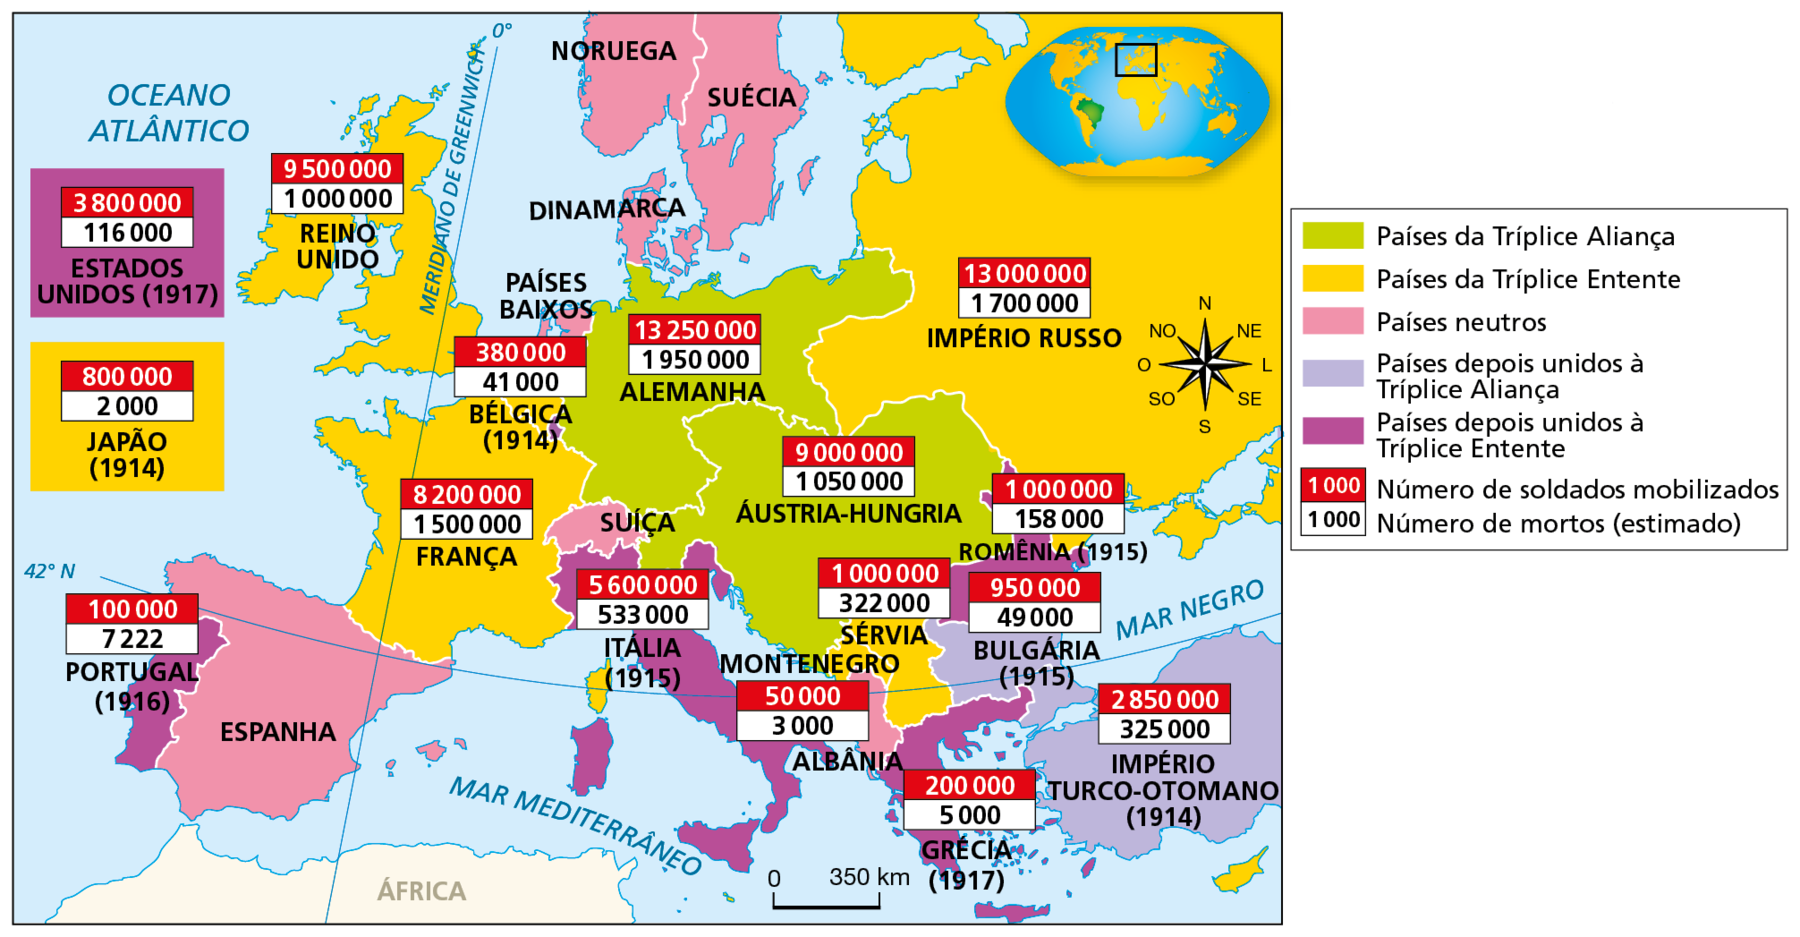 Mapa. Europa: Primeira Guerra Mundial (1914-1918). Continente europeu dividido territorialmente em países e impérios. Em verde, 'Países da Tríplice Aliança', compreendendo a Alemanha, com 13.250.000 soldados mobilizados e 1.950.000 mortos (estimado); Áustria-Hungria, com 9.000.000 de soldados mobilizados e 1.050.000 mortos (estimado). Em amarelo, 'Países da Tríplice Entente', compreendendo o Império Russo, com 13.000.000 de soldados mobilizados e 1.700.000 mortos (estimado); Sérvia, com 1.000.000 de soldados mobilizados e 322.000 mortos (estimado); França, com 8.200.000 soldados mobilizados e 1.500.000 mortos (estimado); Reino Unido, com 9.500.000 soldados mobilizados e 1.000.000 mortos (estimado); Japão, com 800.000 soldados mobilizados e 2.000 mortos (estimado). Em rosa, 'Países neutros', compreendendo Noruega, Suécia, Dinamarca, Países Baixos, Suíça, Albânia e Espanha. Em lilás, 'Países depois unidos à Tríplice Aliança', compreendendo a Bulgária (1915), com 950.000 soldados mobilizados e 49.000 mortos (estimado); Império Turco-Otomano (1914), com 2.850.000 soldados mobilizados e 325.000 mortos (estimado). Em roxo, 'Países depois unidos à Tríplice Entente' compreendendo Portugal (1916), com 100.000 soldados mobilizados e 7.222 mortos (estimado); Itália (1915), com 5.600.000 soldados mobilizados e 533.000 mortos (estimado); Grécia (1917), com 200.000 soldados mobilizados e 5.000 mortos (estimado); Romênia (1915), com 1.000.000 soldados mobilizados e 158.000 mortos (estimado); Estados Unidos (1917), com 3.800.000 soldados mobilizados e 116.000 mortos (estimado). À direita, rosa dos ventos, na parte inferior escala de 0 a 350 quilômetros.